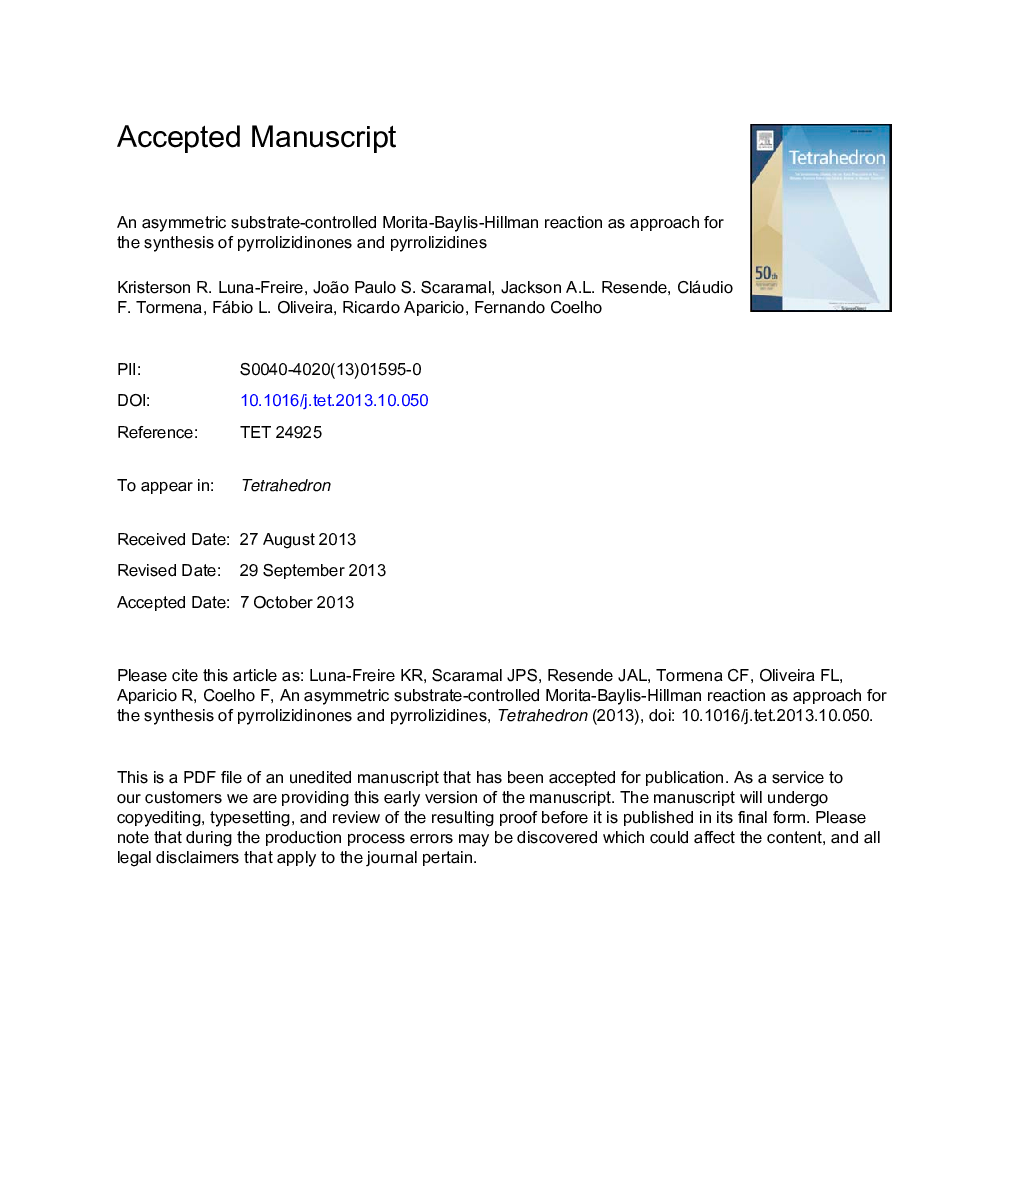 یک واکنش موریتا-بیلیس-هیلمن تحت کنترل تحت نامتقارن به عنوان روش برای سنتز پیرولوزیدینون و پیروللیزیدین 